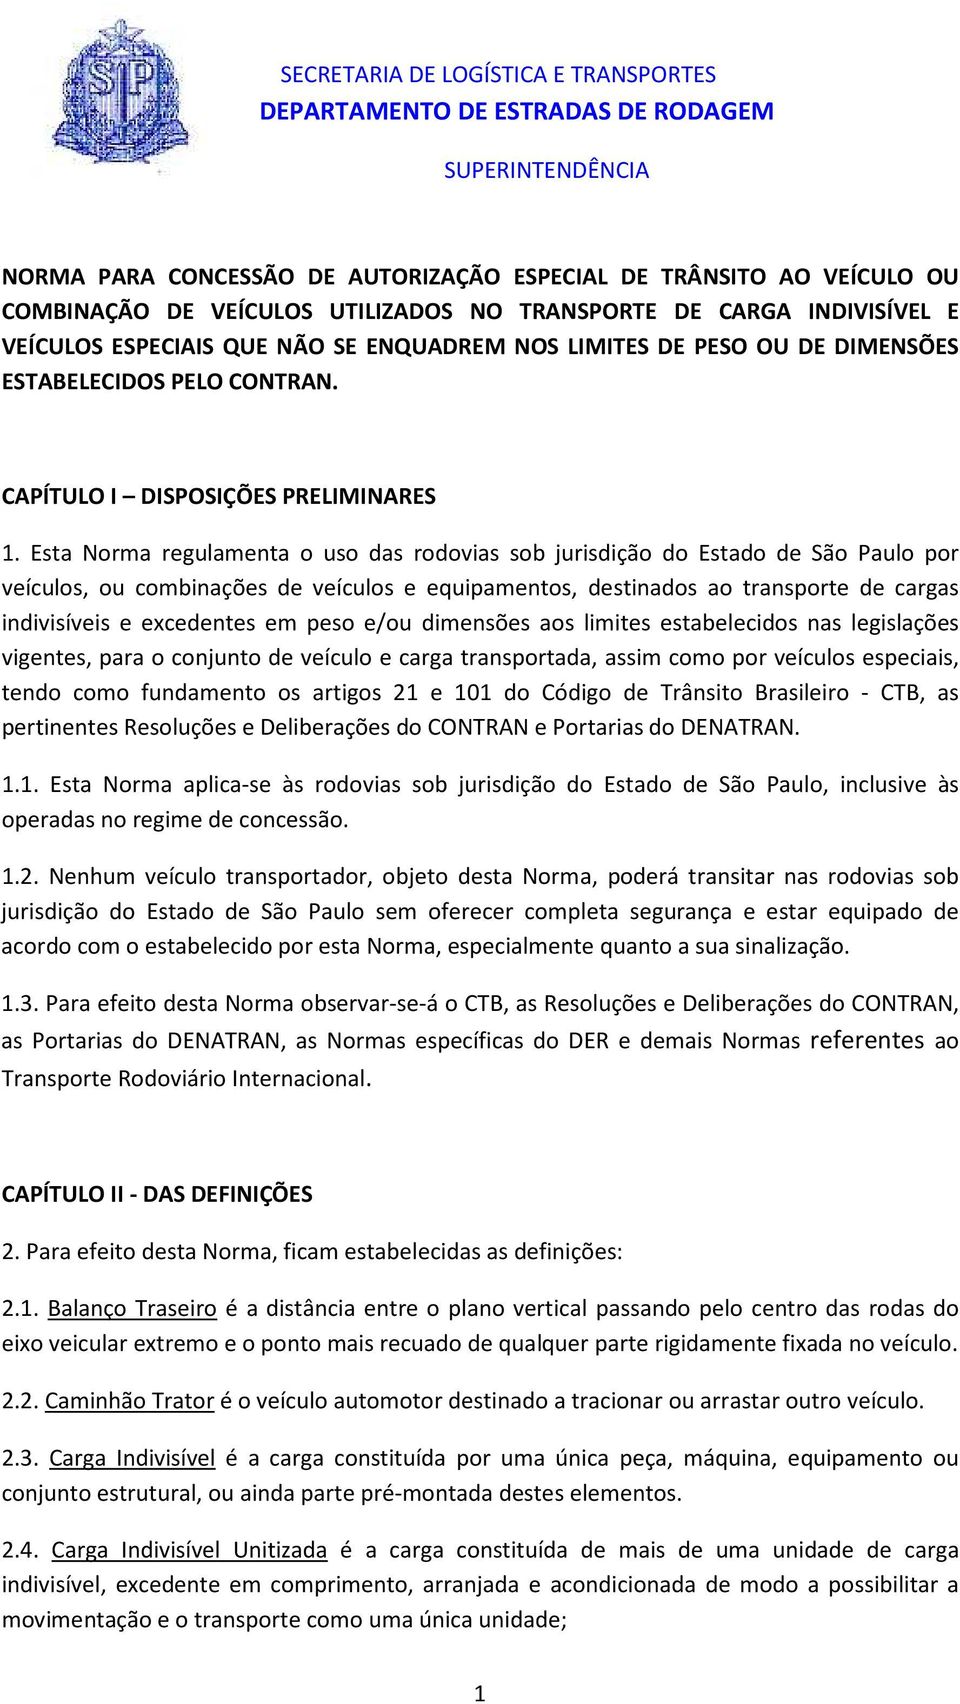 Esta Norma regulamenta o uso das rodovias sob jurisdição do Estado de São Paulo por veículos, ou combinações de veículos e equipamentos, destinados ao transporte de cargas indivisíveis e excedentes